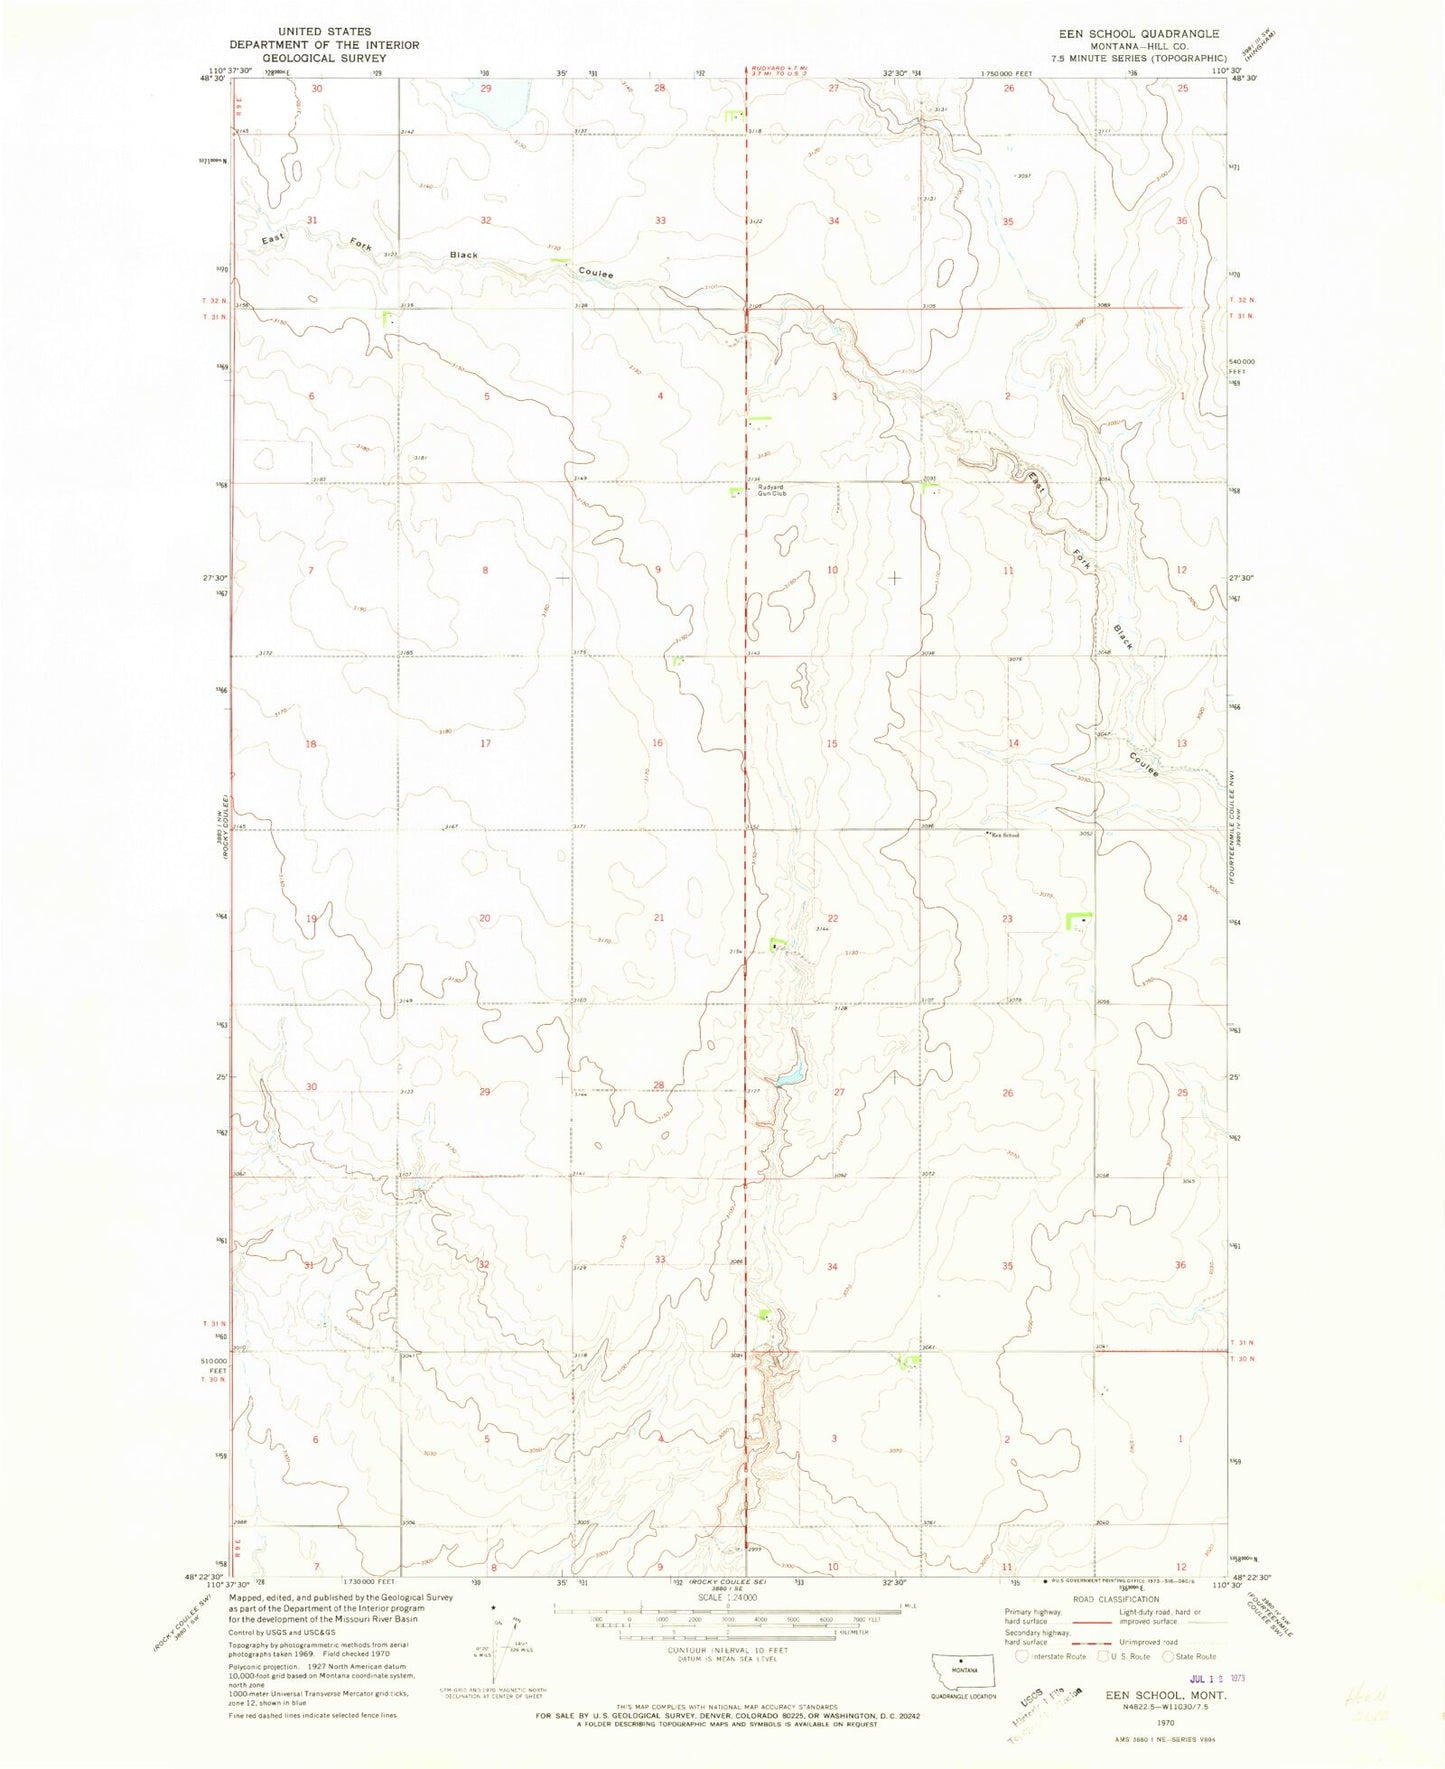 Classic USGS Een School Montana 7.5'x7.5' Topo Map Image